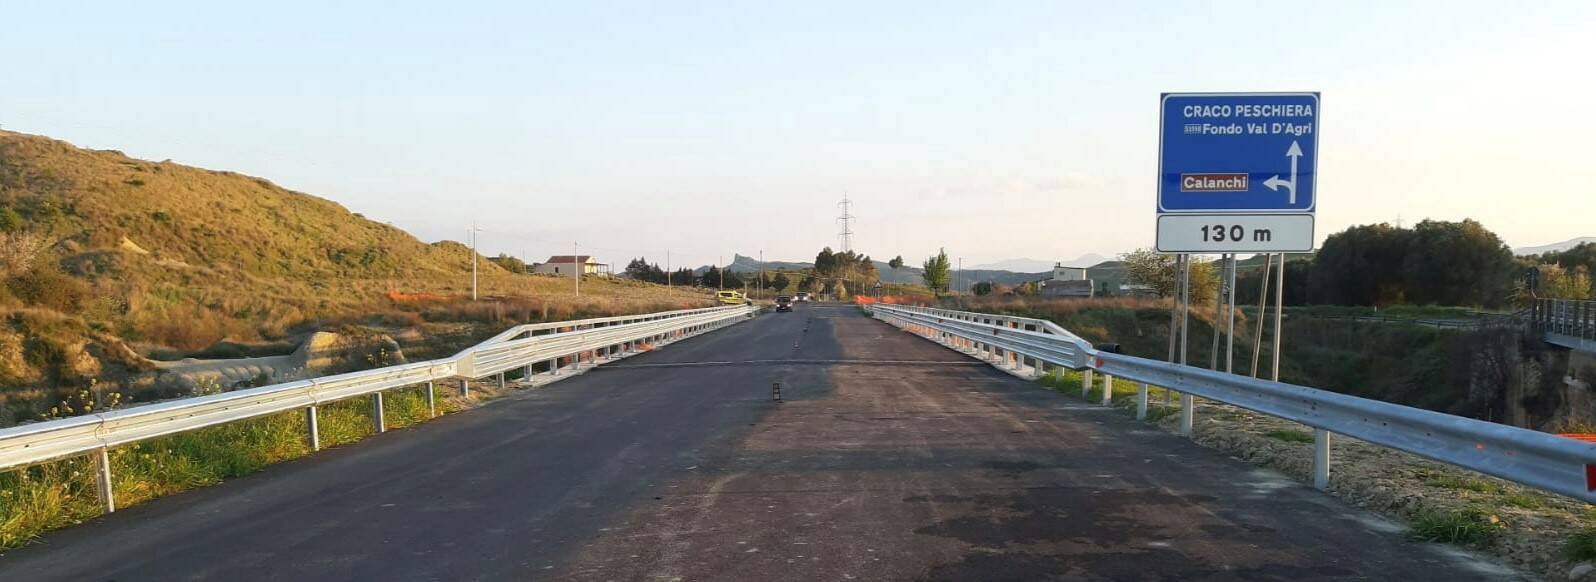 Aperto anche in direzione Craco il nuovo ponte sulla ex strada statale 176